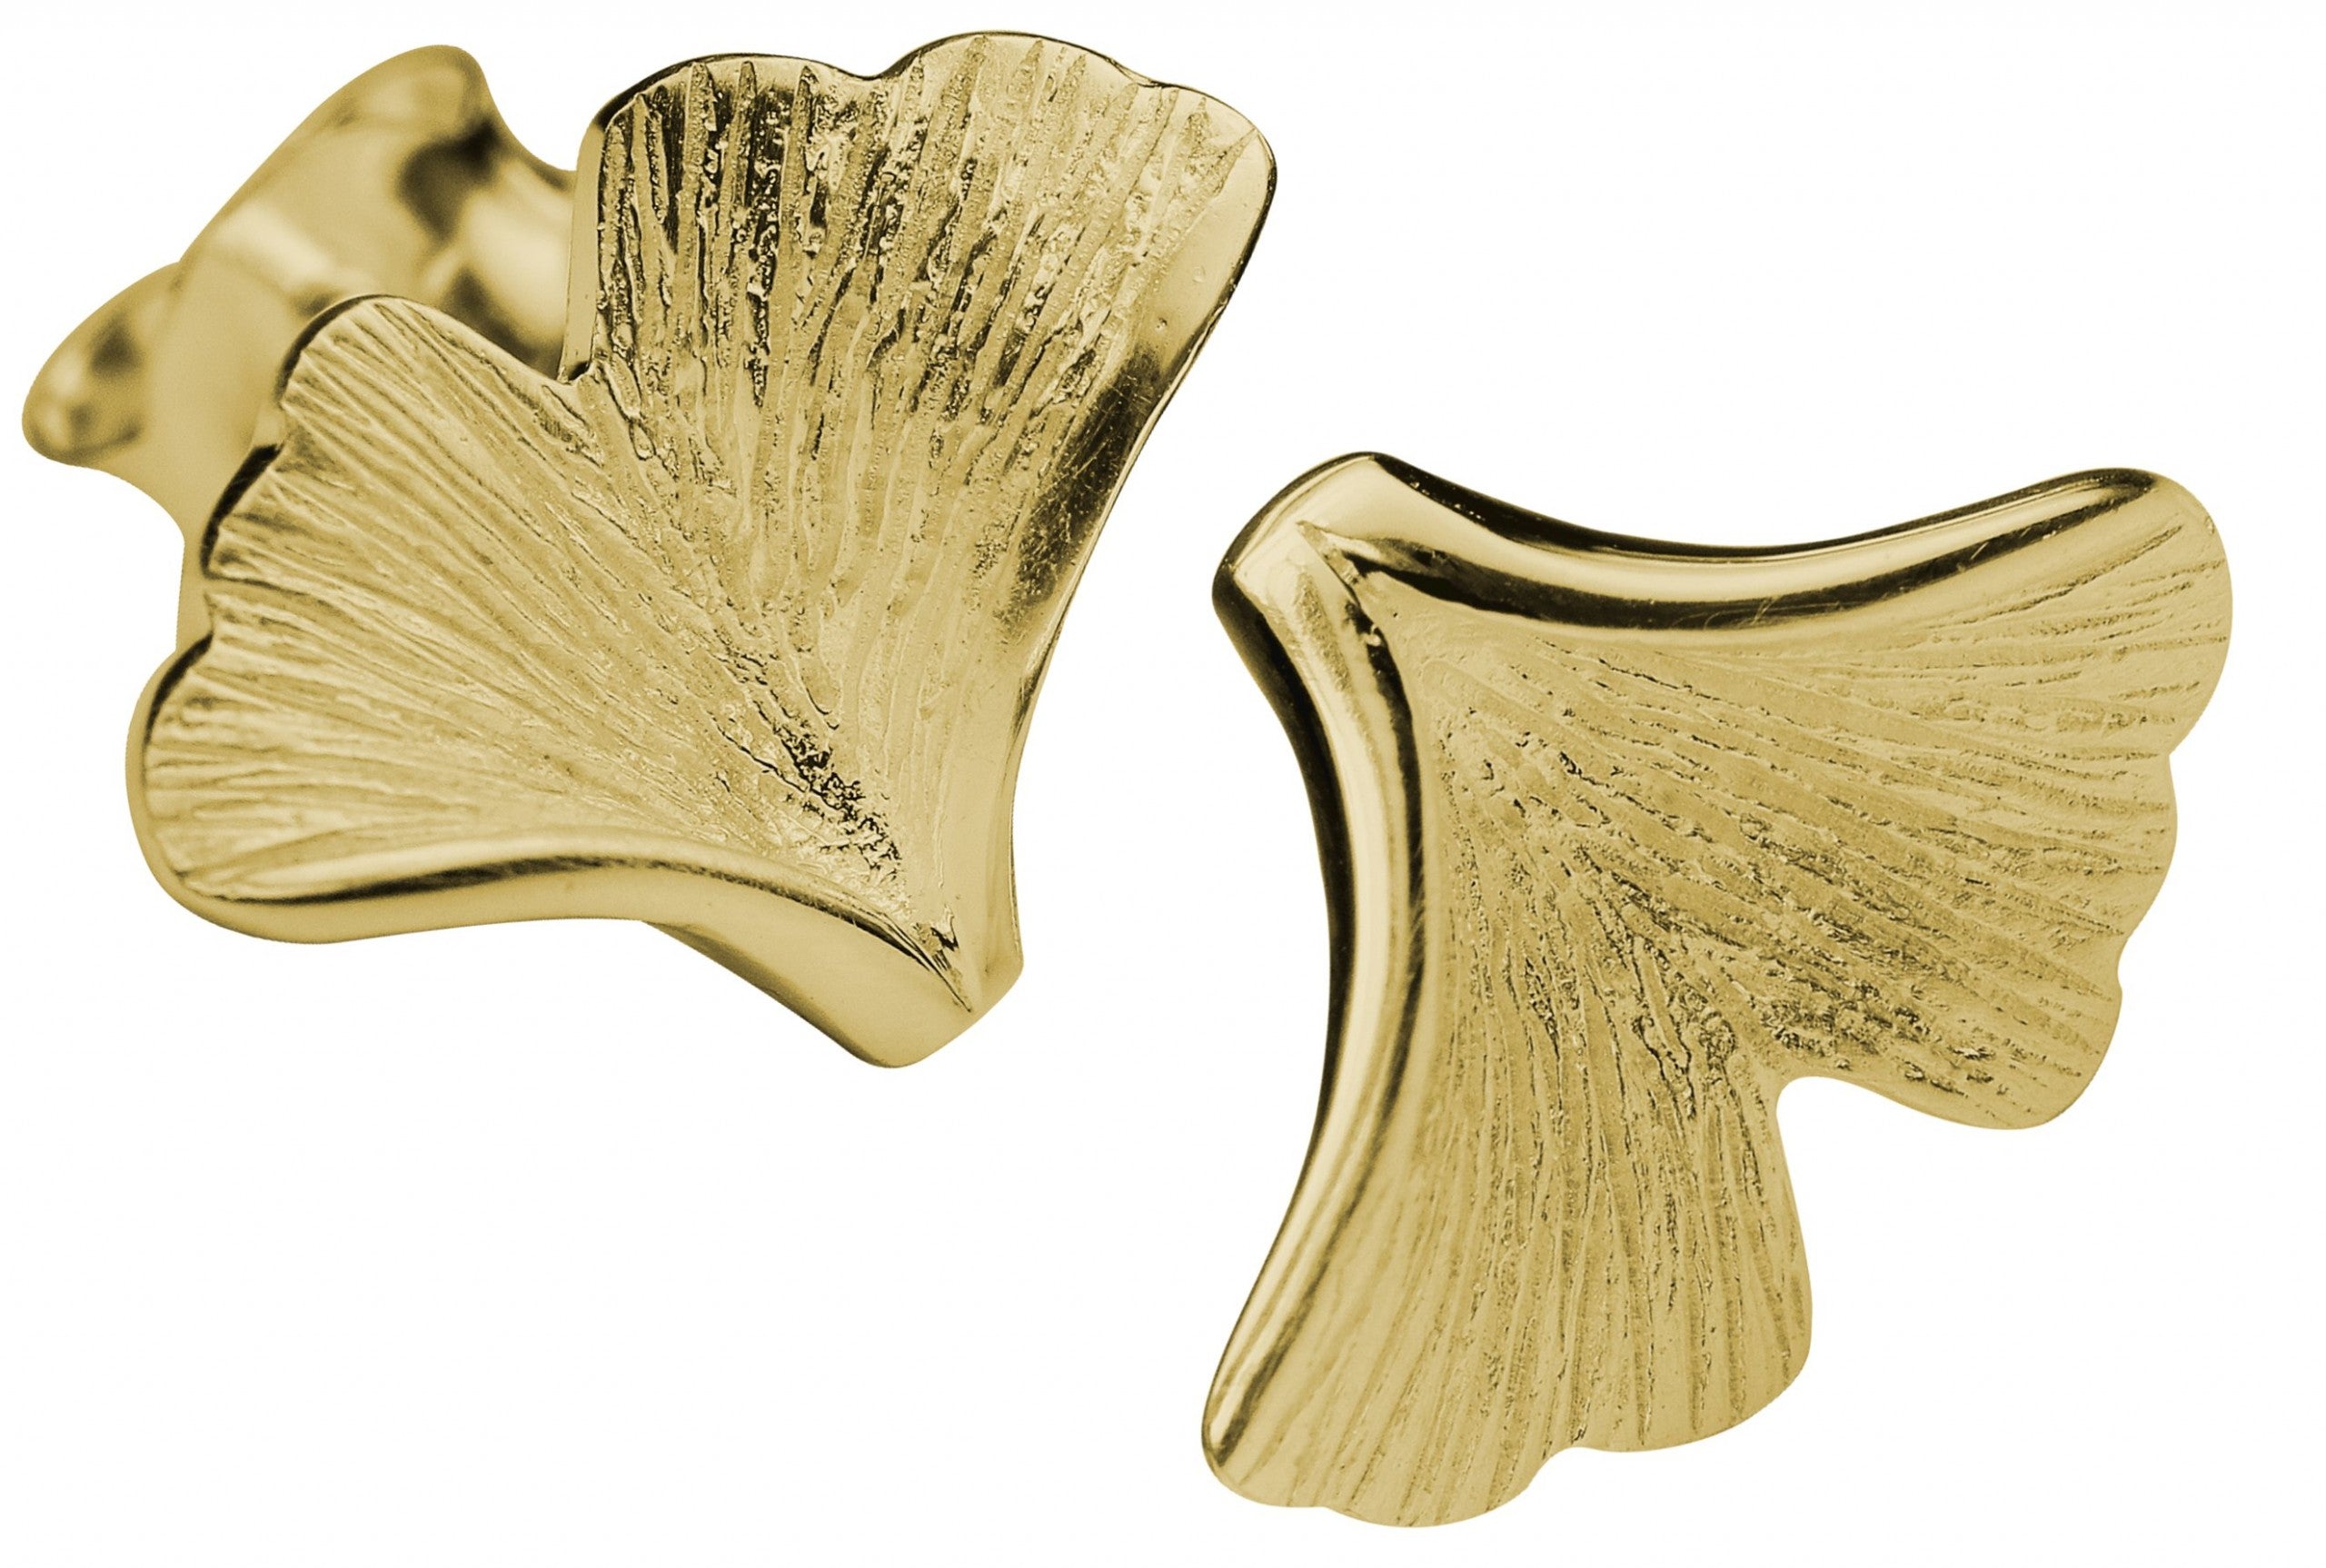 Ohrstecker aus Silber für Damen in Form eines Gingko Blattes mit fein mattierter und vergoldeter Oberfläche.